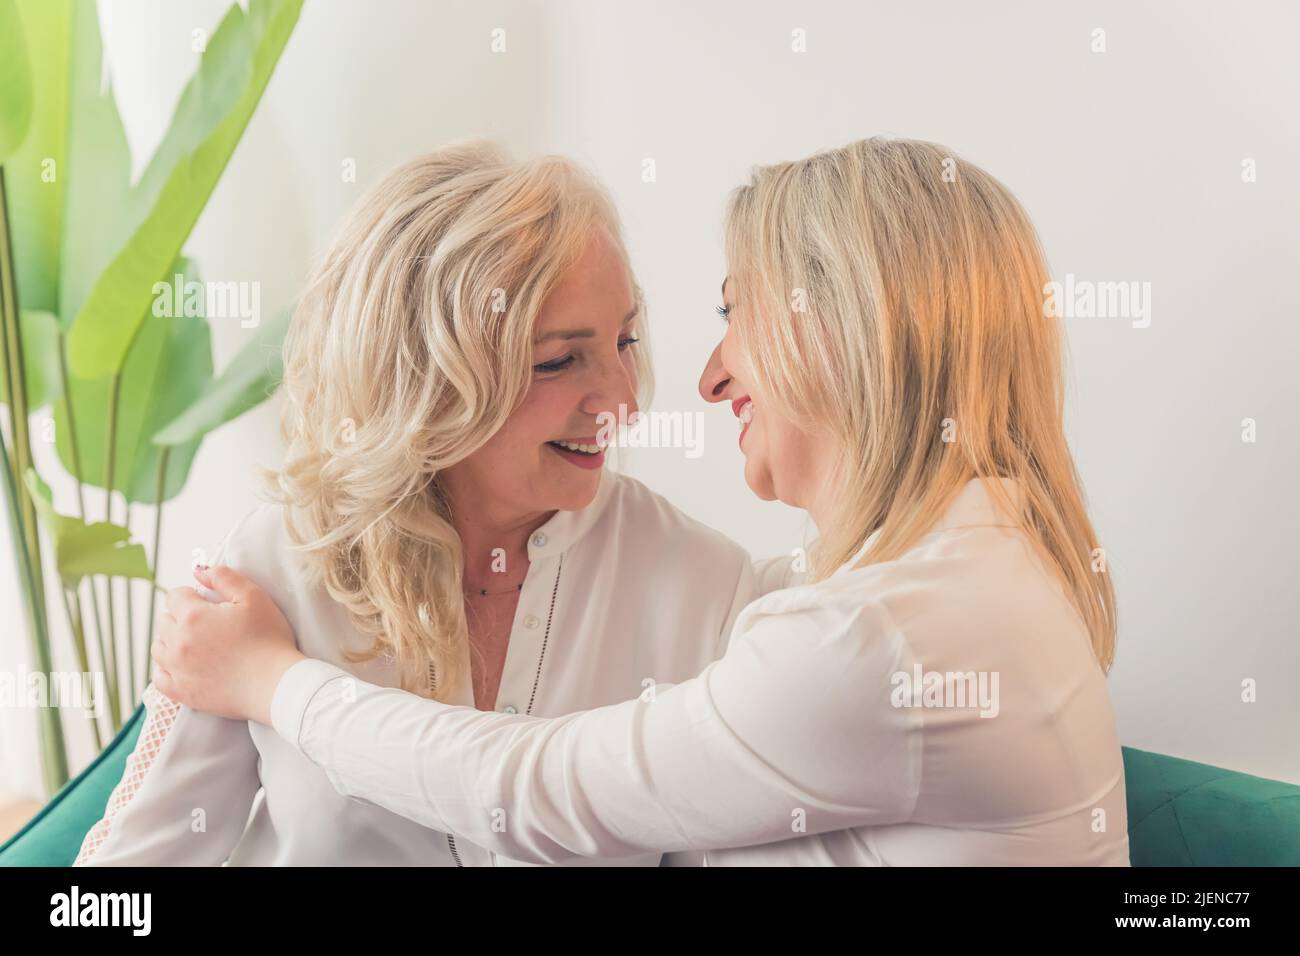 Primo piano ripresa interna di due donne caucasiche di mezza età con capelli biondi e camicie bianche seduti su un divano che si abbracciano e ridono. Foto di alta qualità Foto Stock